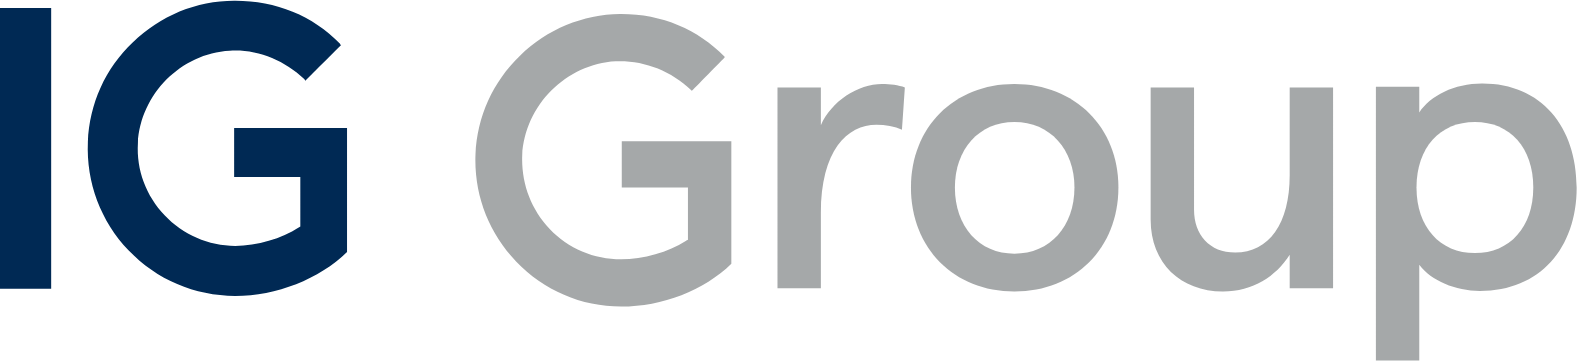 IG Group logo large (transparent PNG)